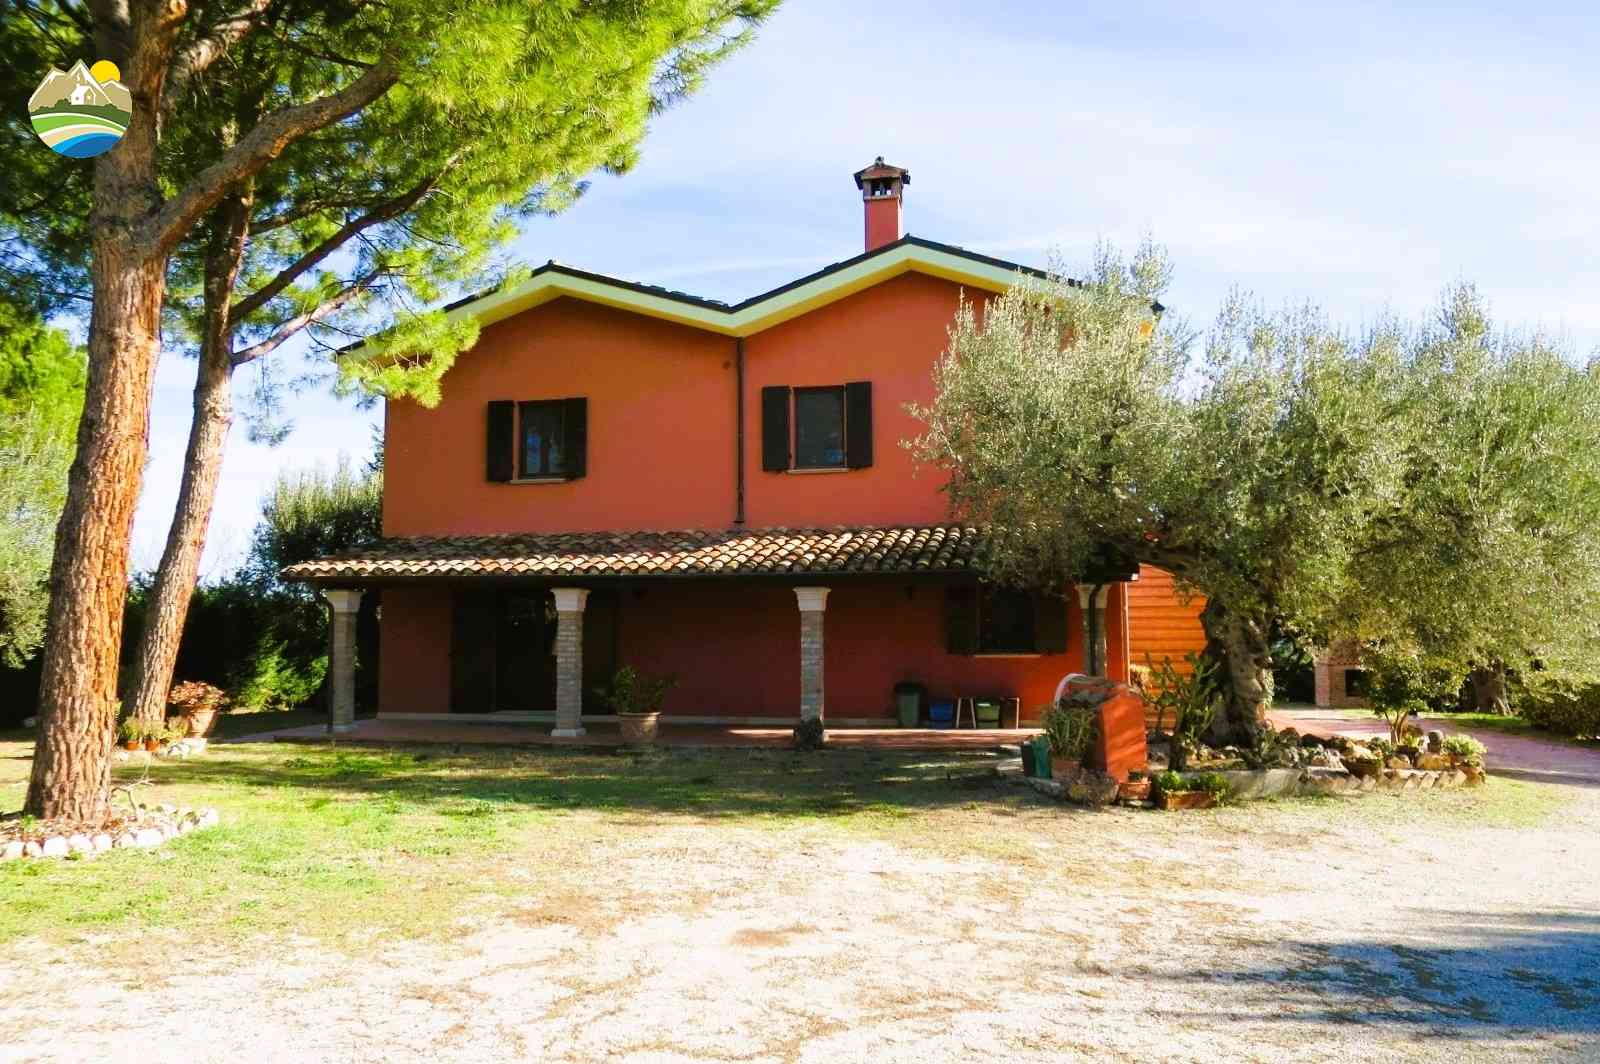 Country Houses Country Houses for sale Bellante (TE), Casale La Vignola - Bellante - EUR 524.401 620